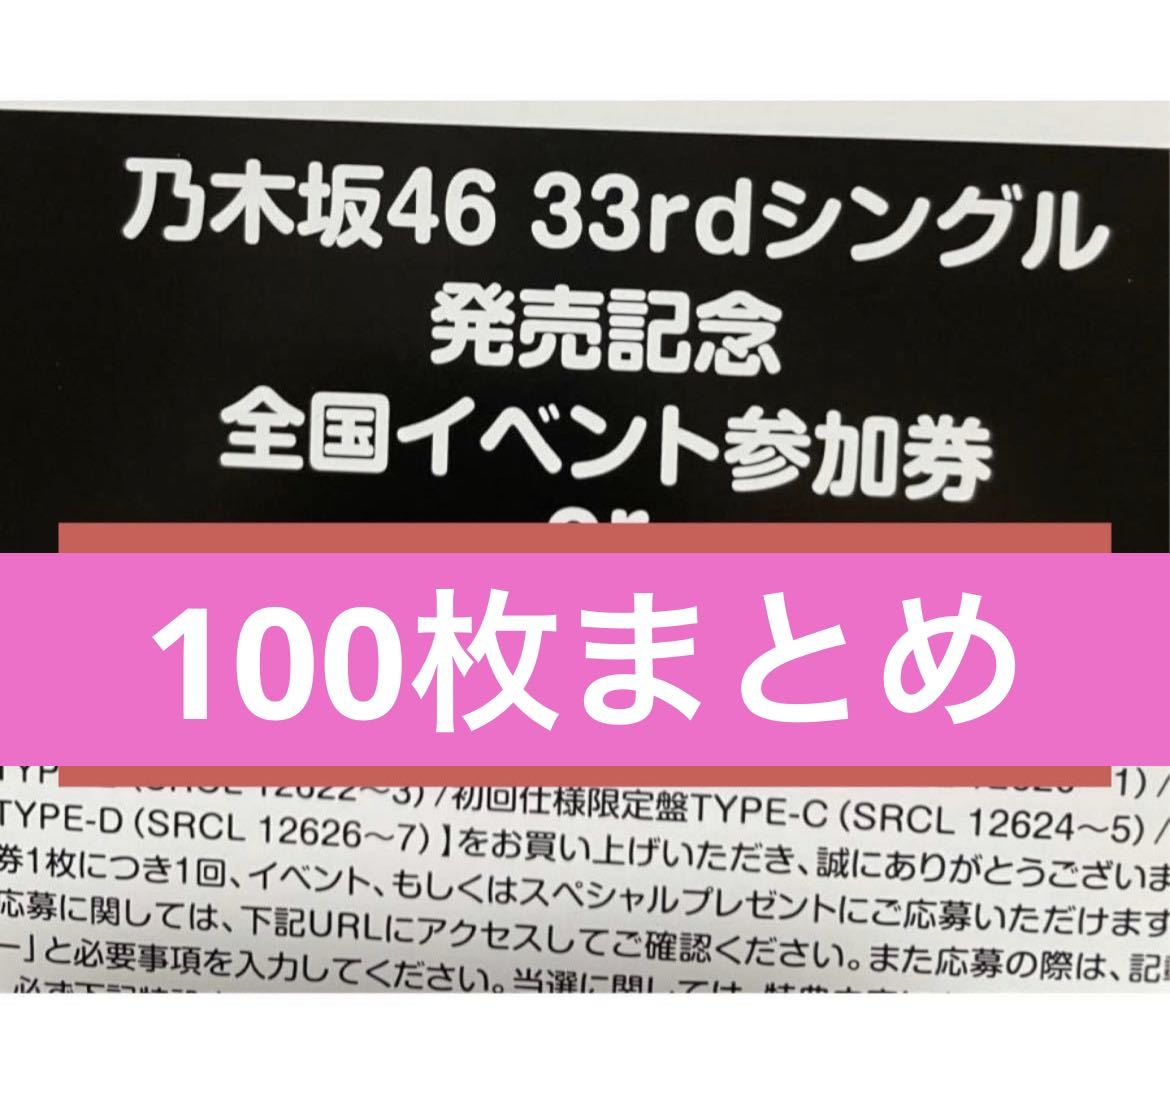 乃木坂46 公式グッズ 100枚 おひとりさま天国 初回特典 33rd